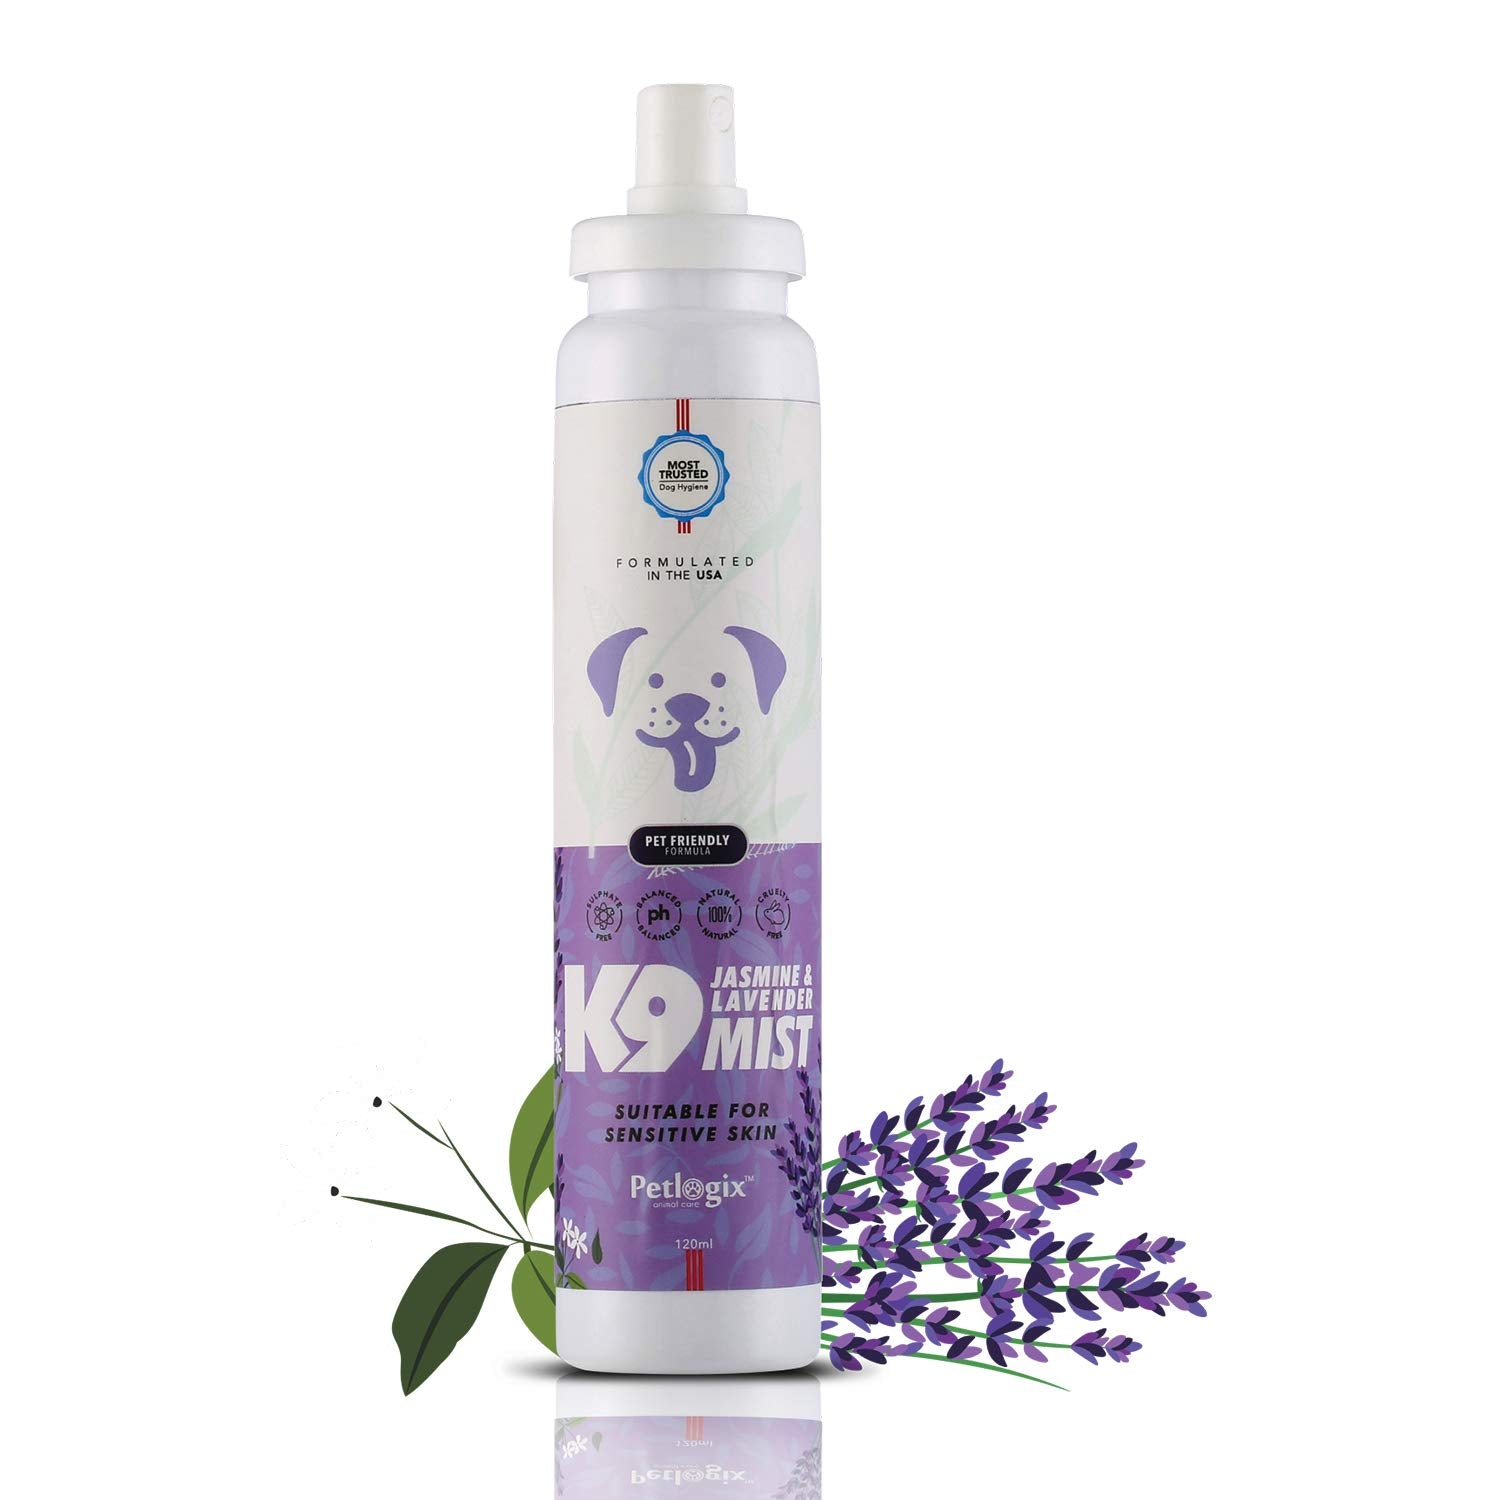 Jasmine & Lavender K9 Mist( Odour Control Spray for Sensitive Coat)